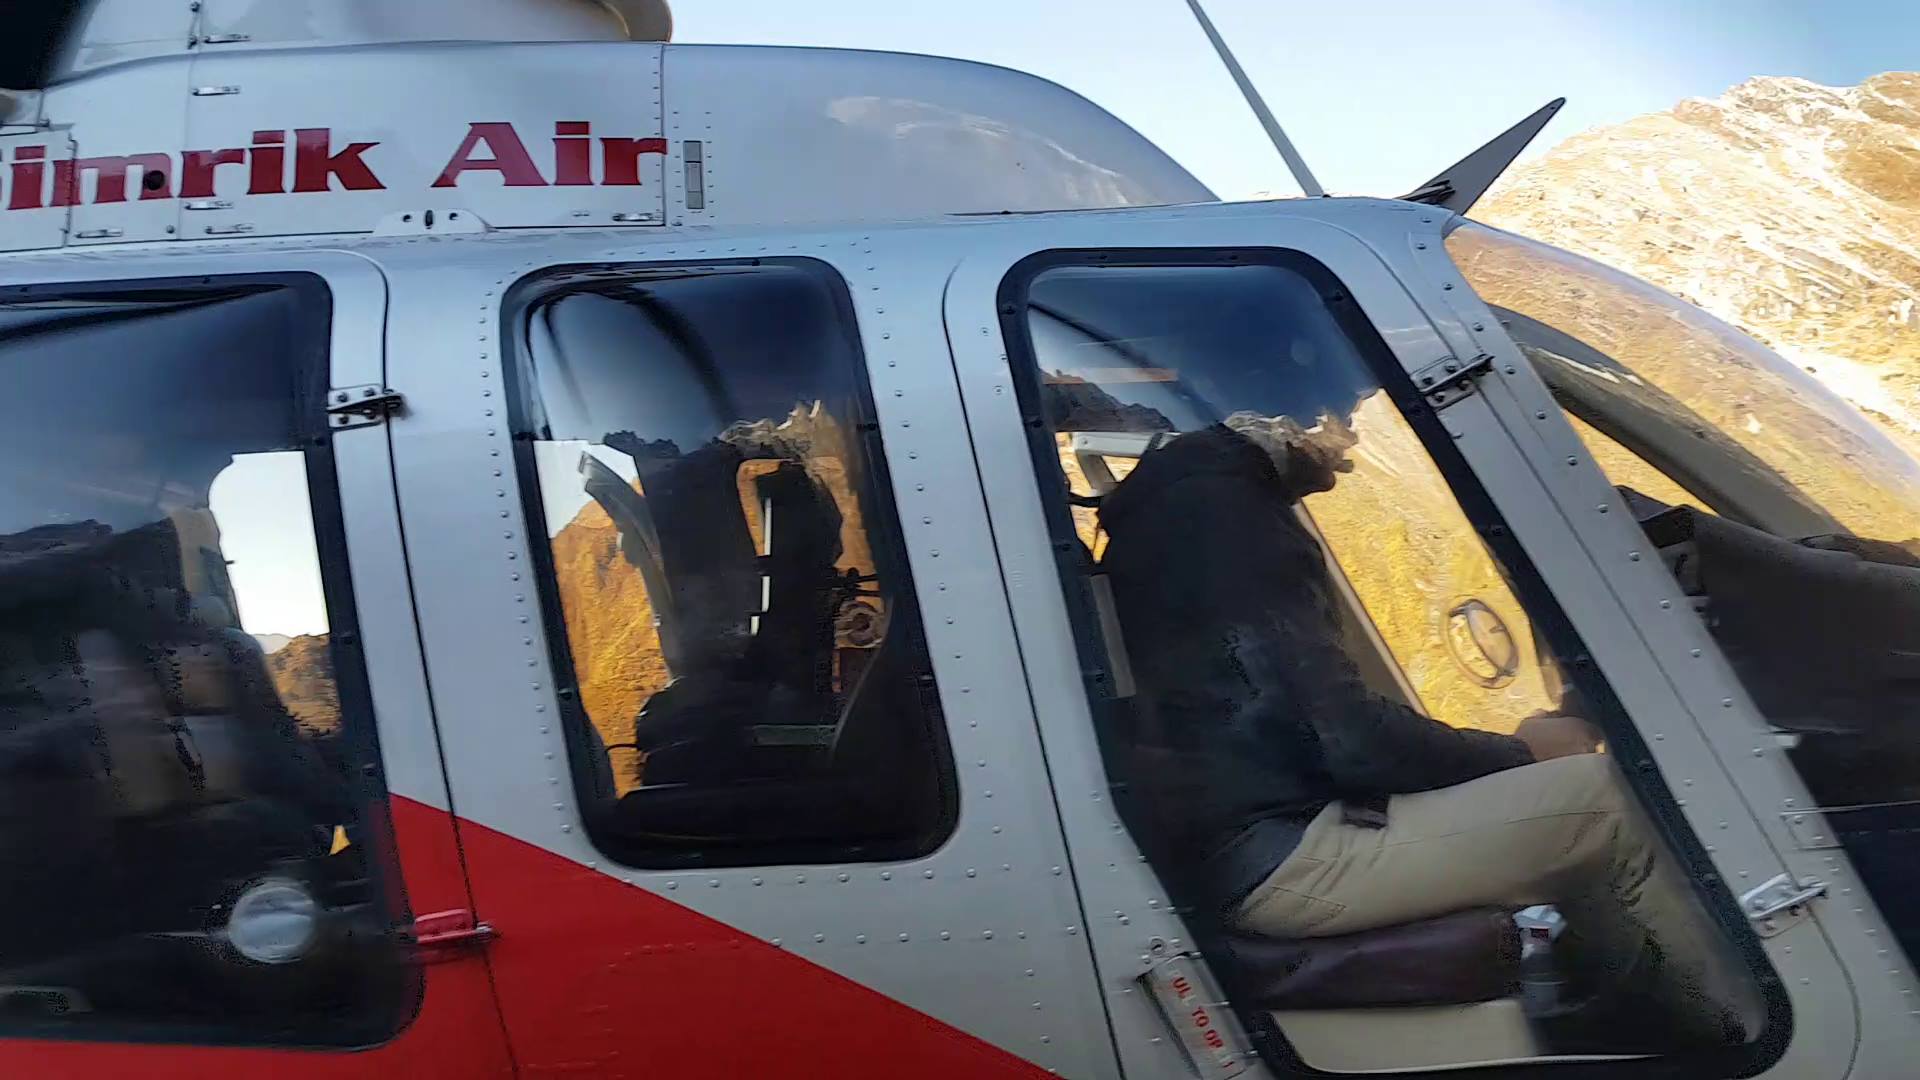 A Simrik Air chopper pictured at the incident site. Photo : Simrik Air